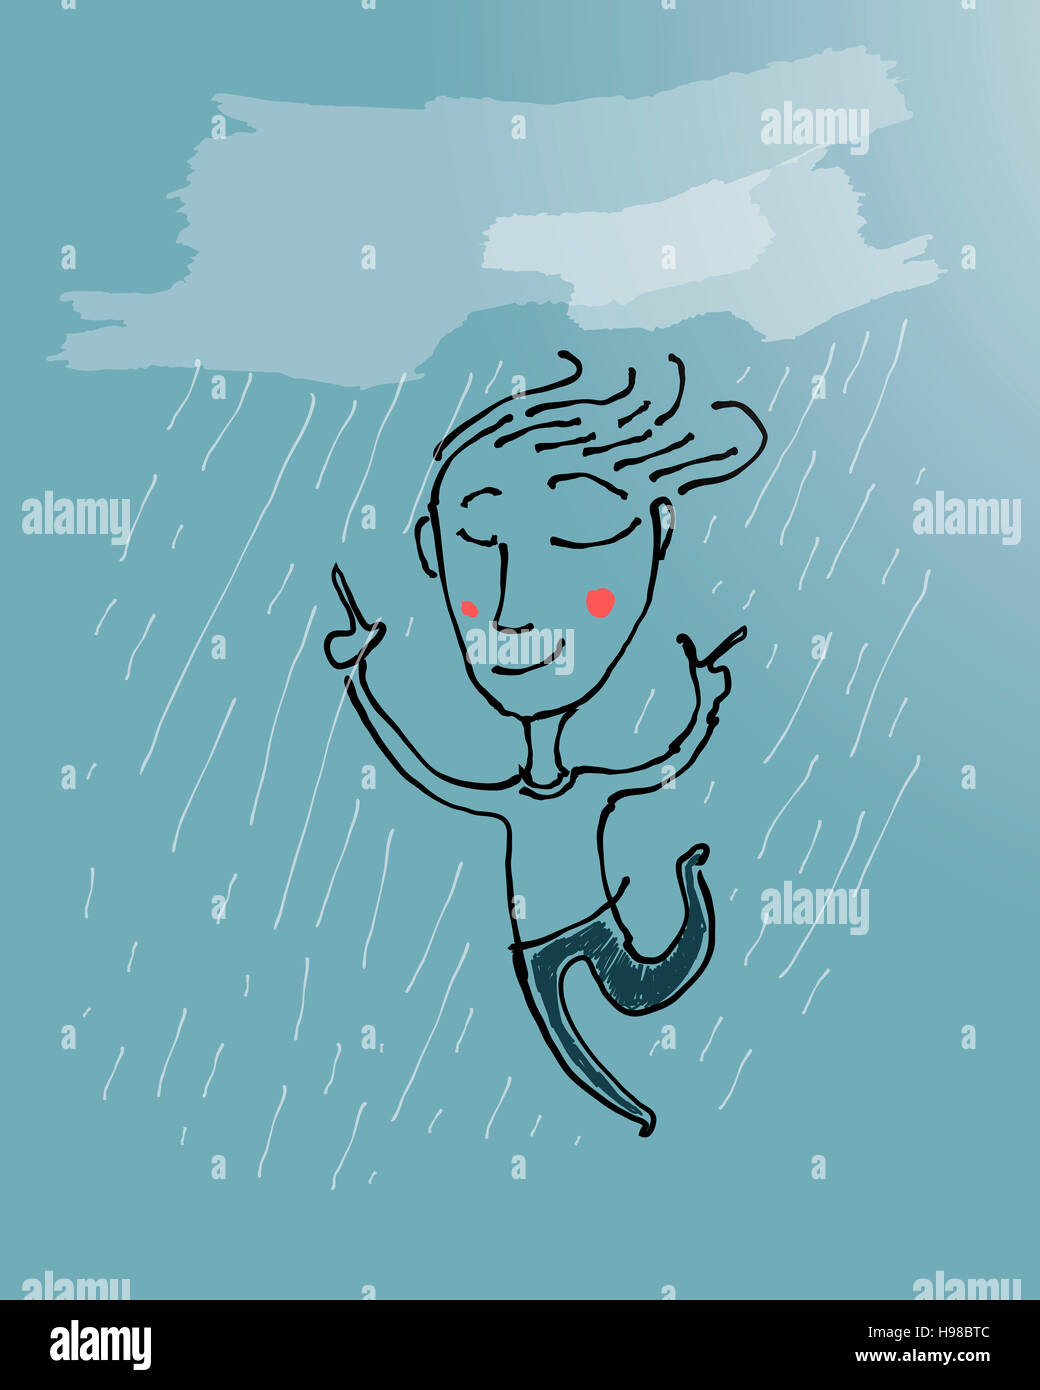 Hand drawn vector illustration ou dessin d'un homme heureux d'exécution sous la pluie Banque D'Images